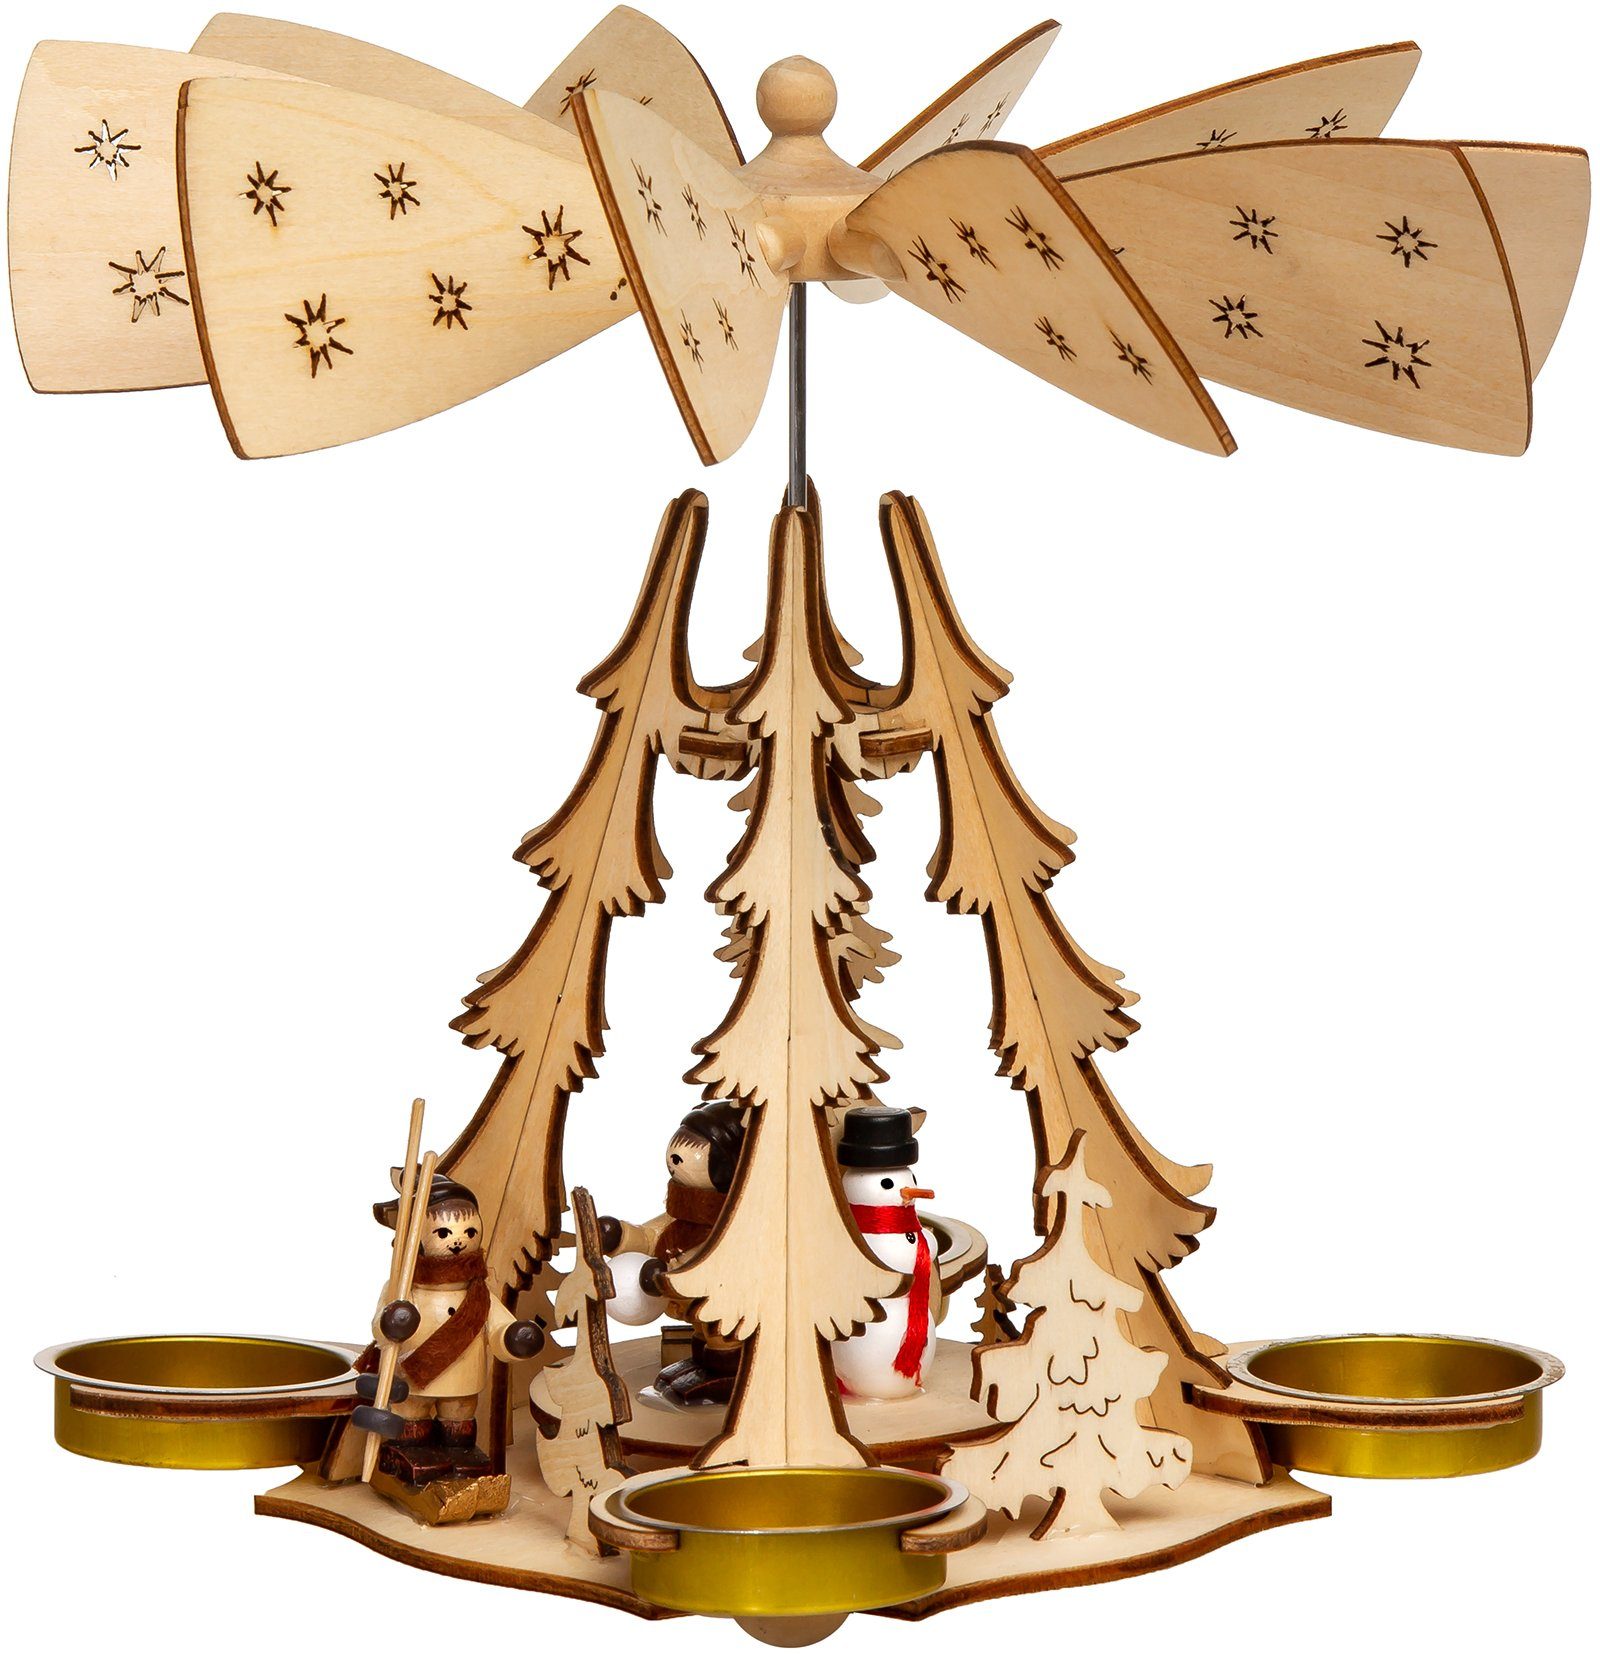 für P29 4 Teelichte Weihnachtspyramide aus Holz SIKORA Tannenbaum H:20cm